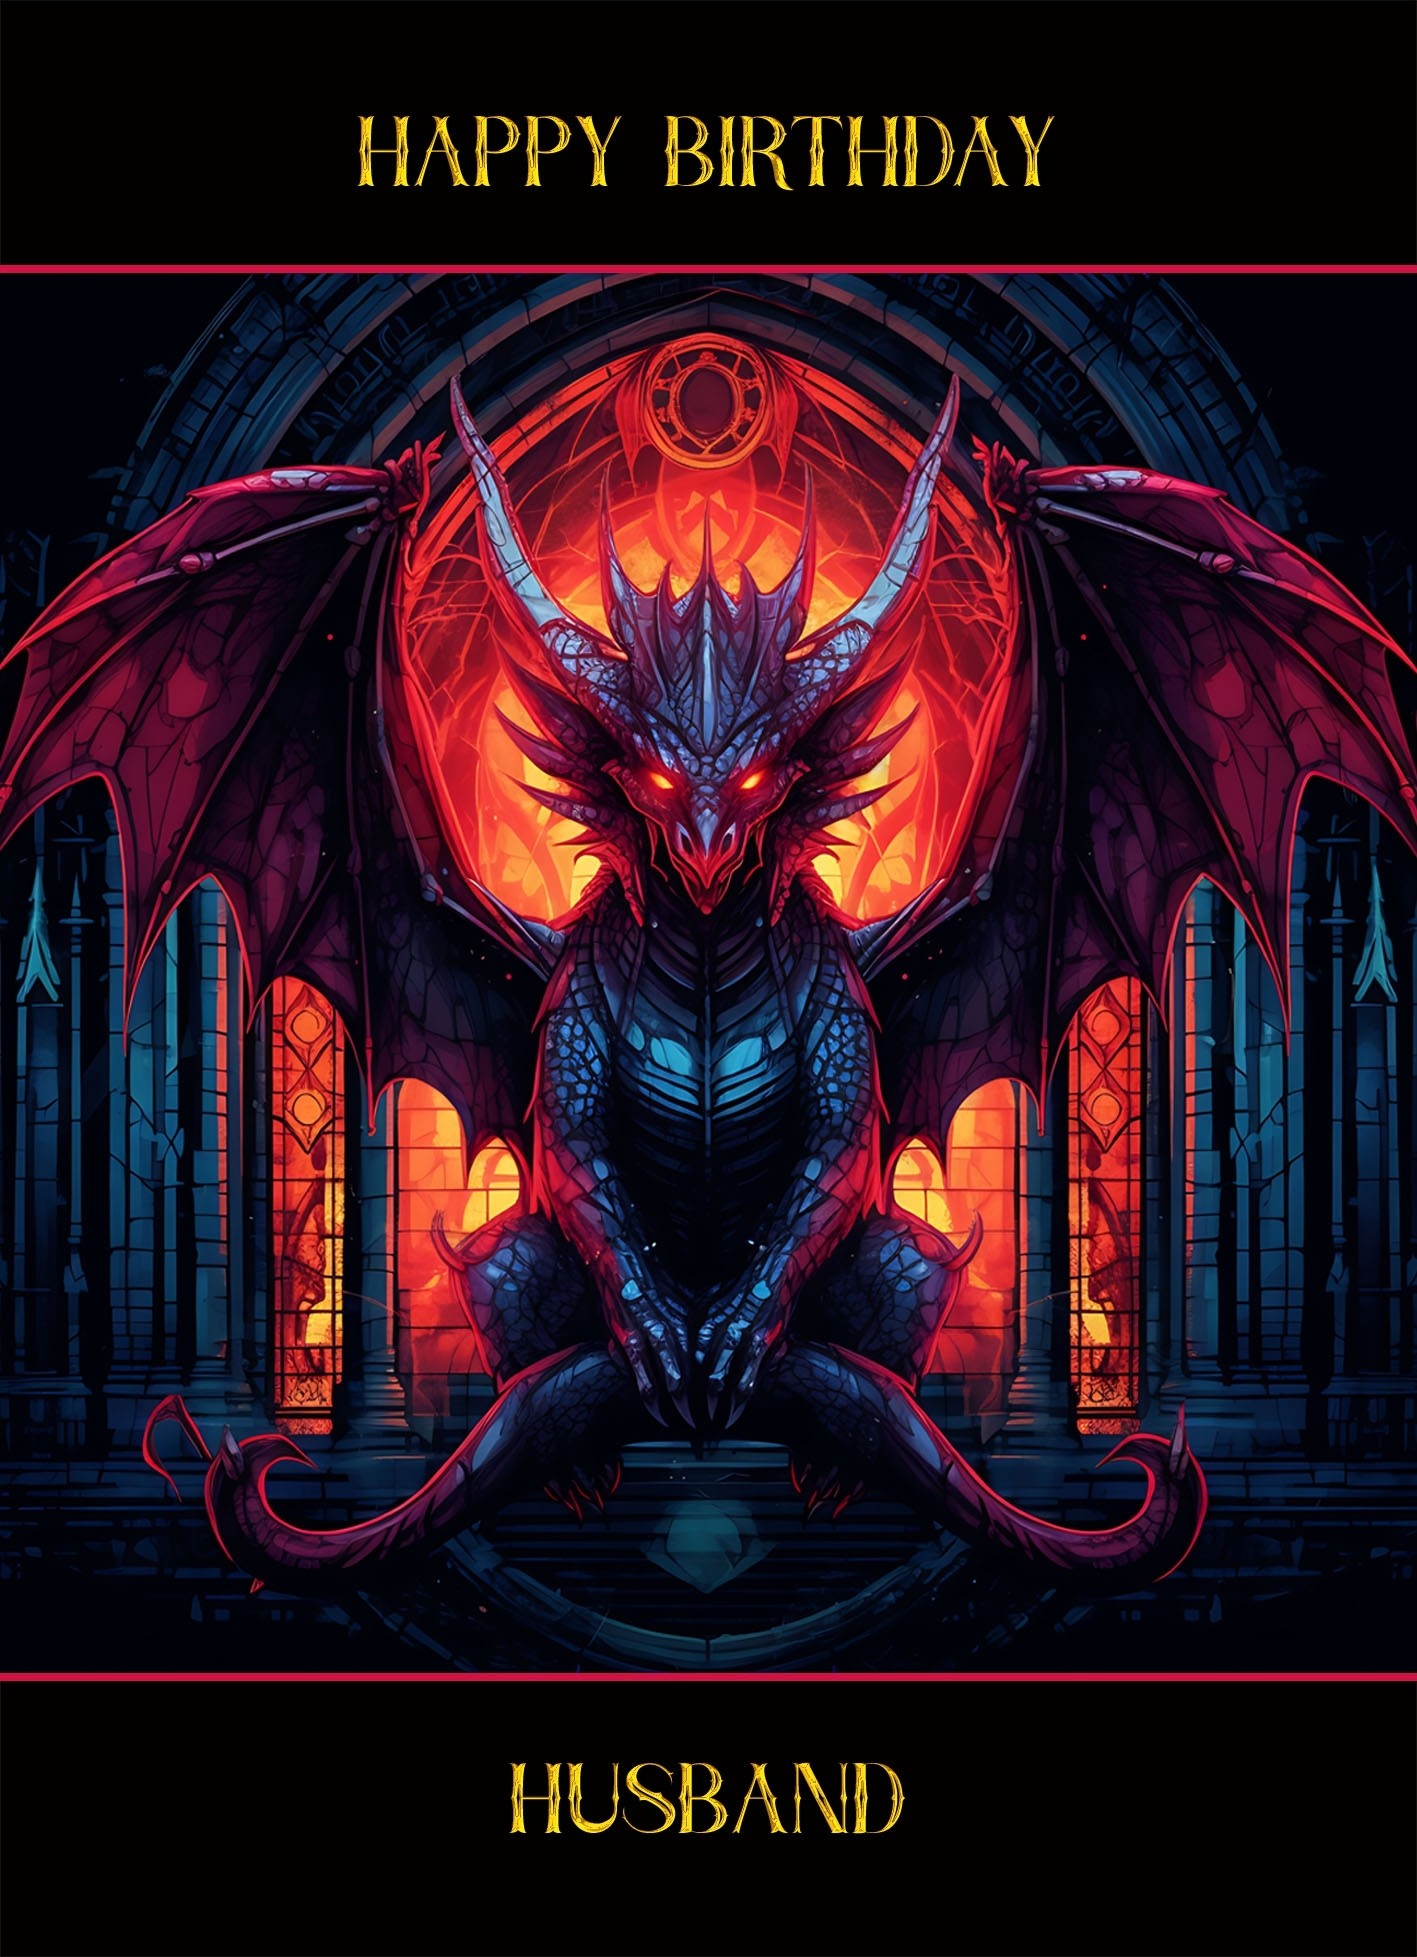 Gothic Fantasy Dragon Birthday Card For Husband (Design 3)